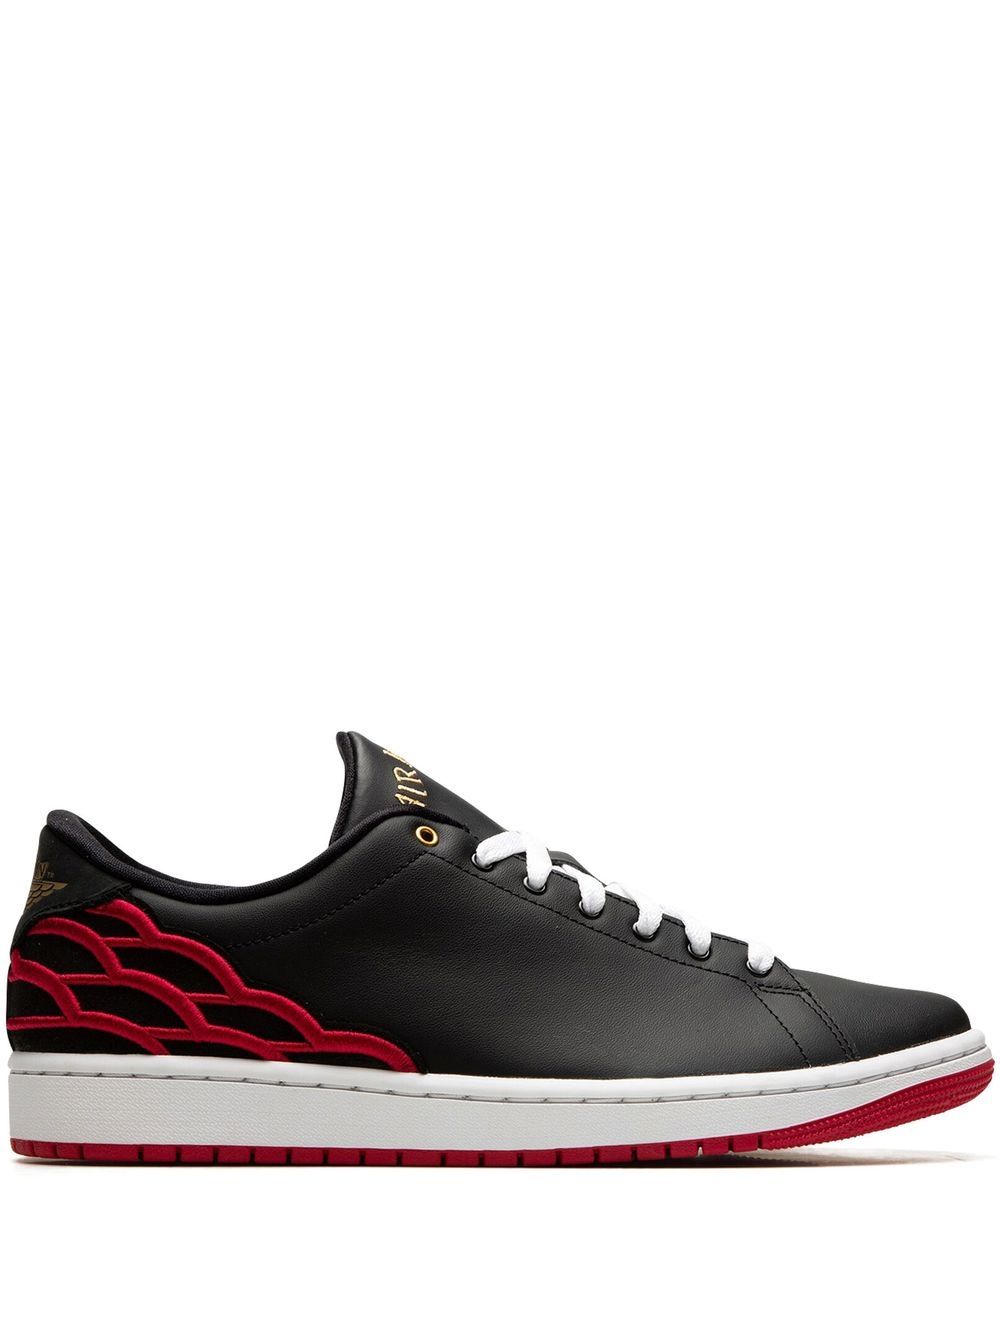 Jordan Air Jordan 1 Centre Court "Black/Pink" sneakers von Jordan